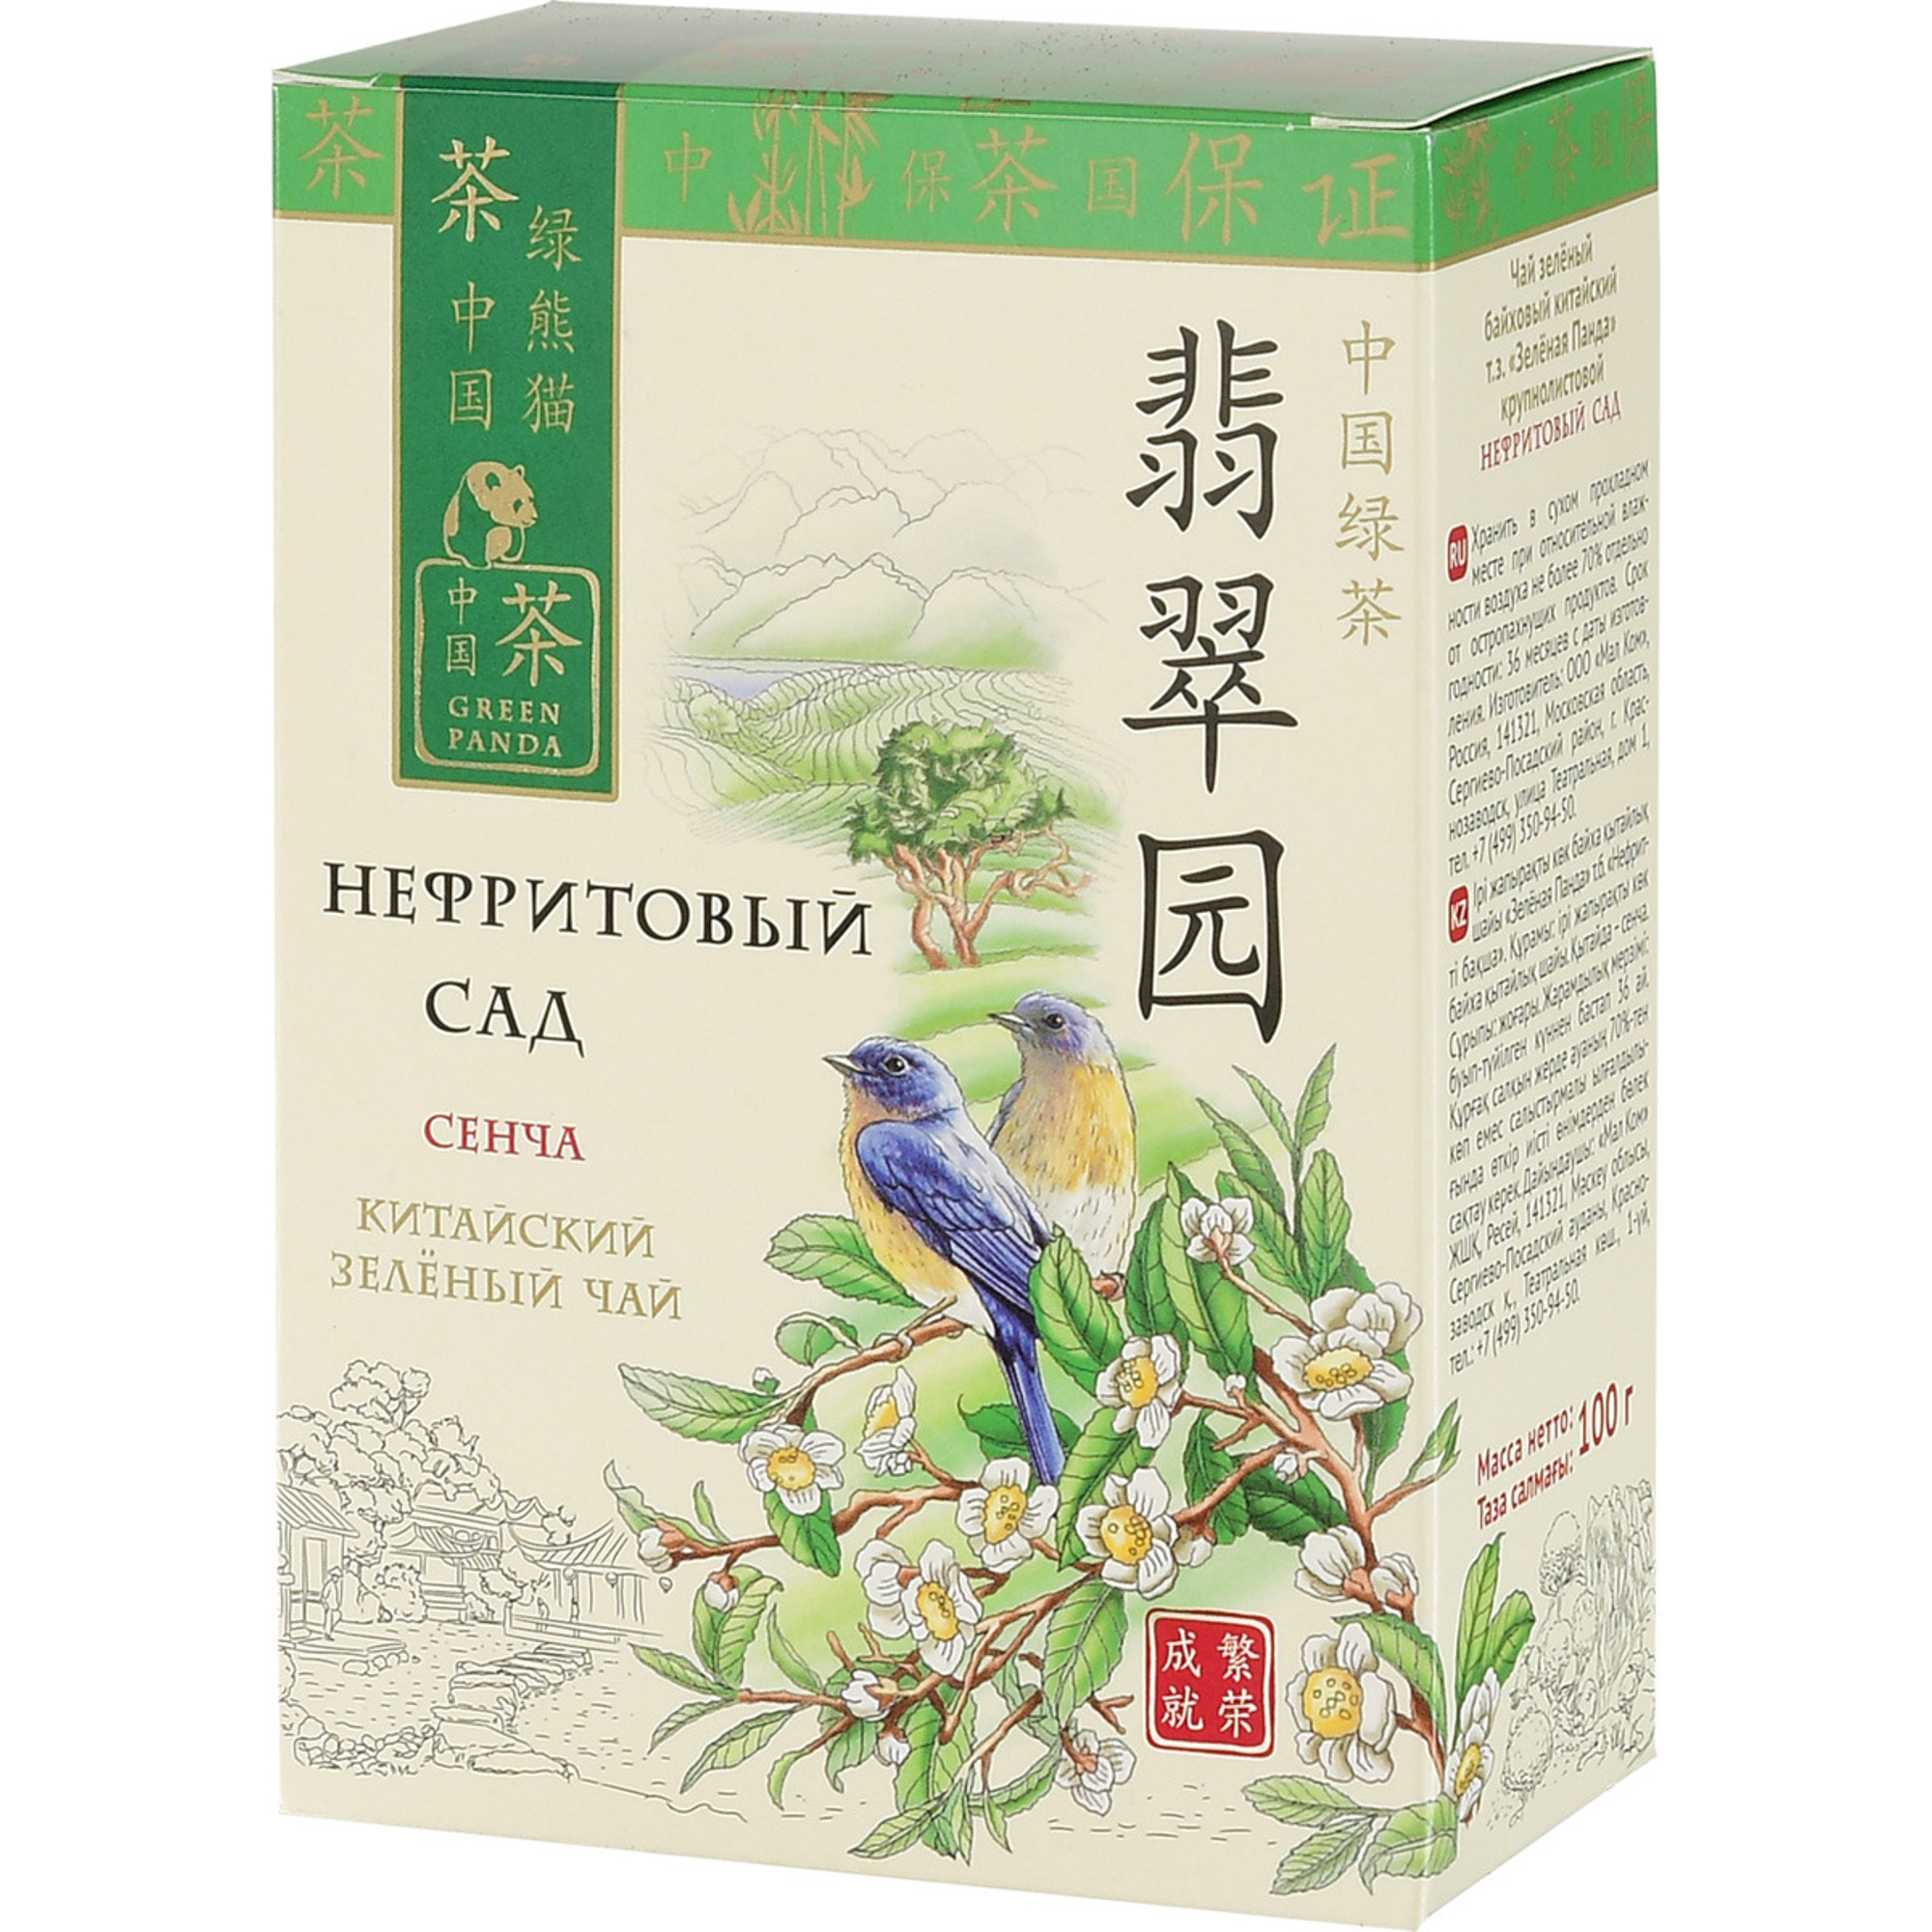 Чай зеленый Зеленая Панда Нефритовый сад Сенча листовой 100 г